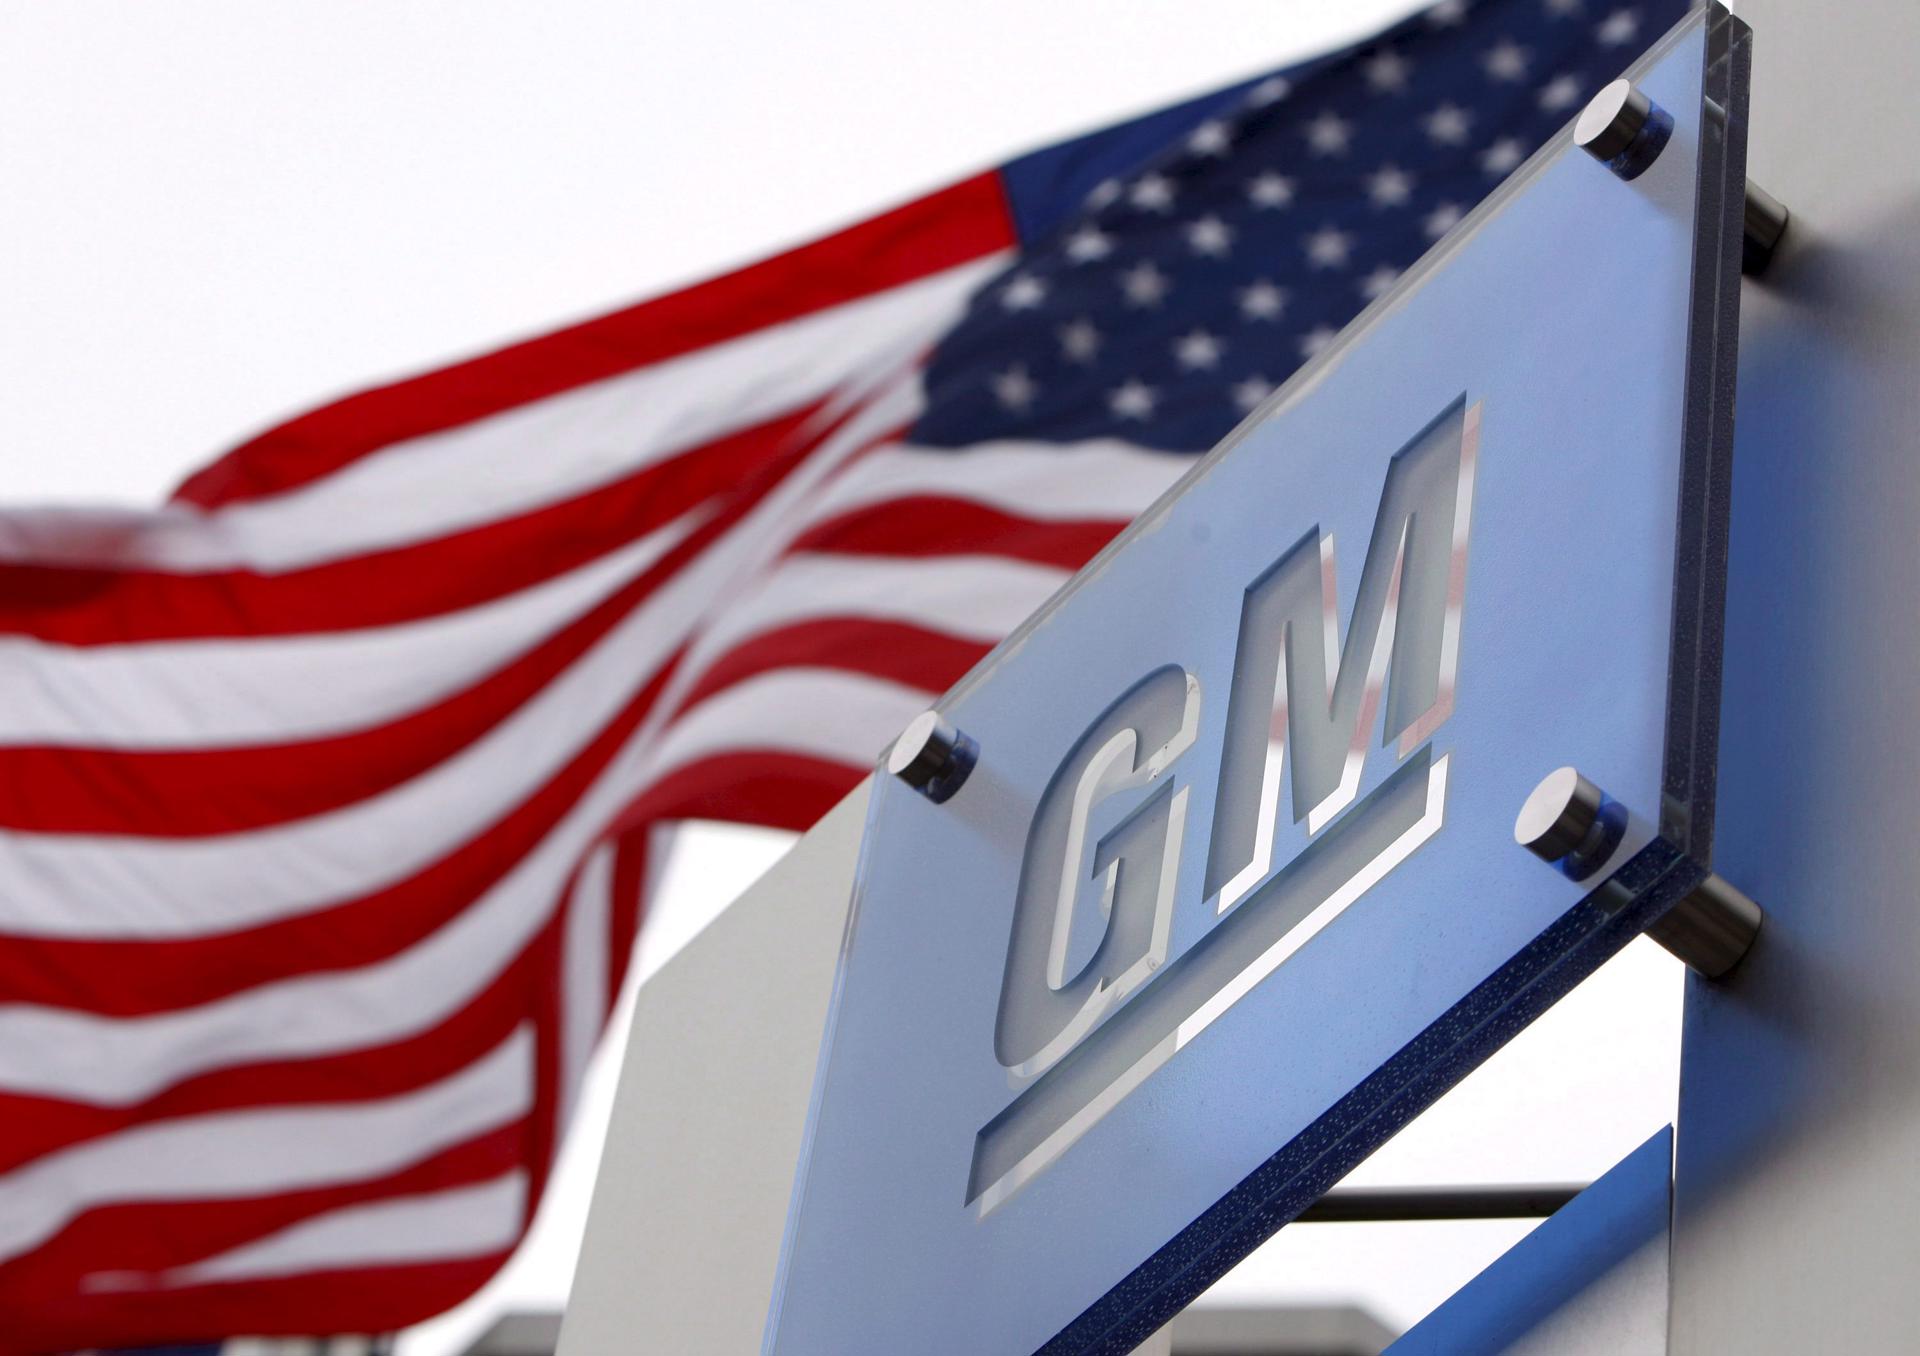 Fotografía de archivo del logo de la compañía General Motors situado a las puertas de la sede de la compañía en Detroit, Michigan (Estados Unidos). EFE/Jeff Kowalsky